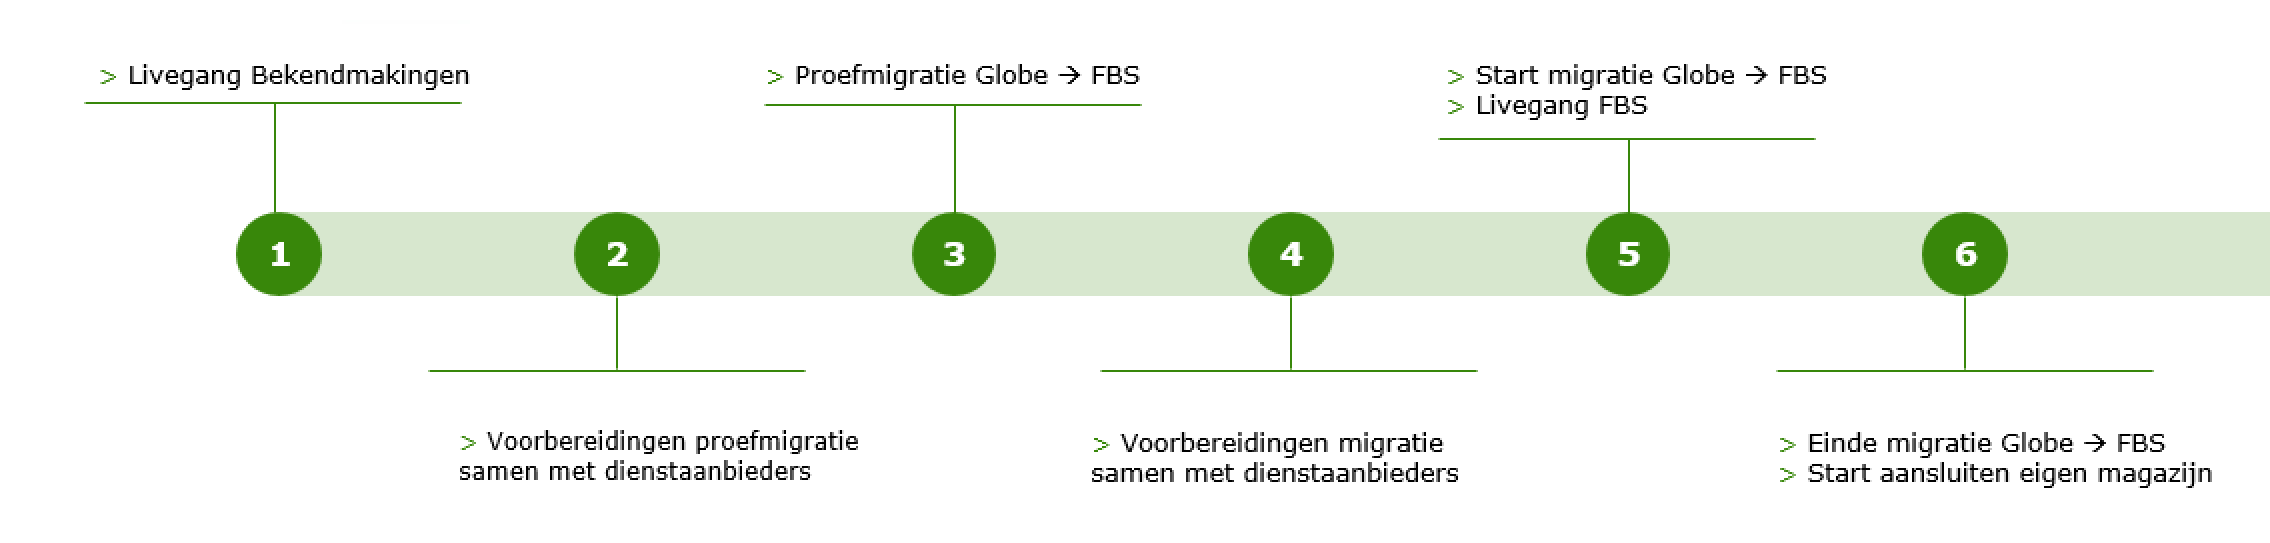 Een schematische weergave van de migratie